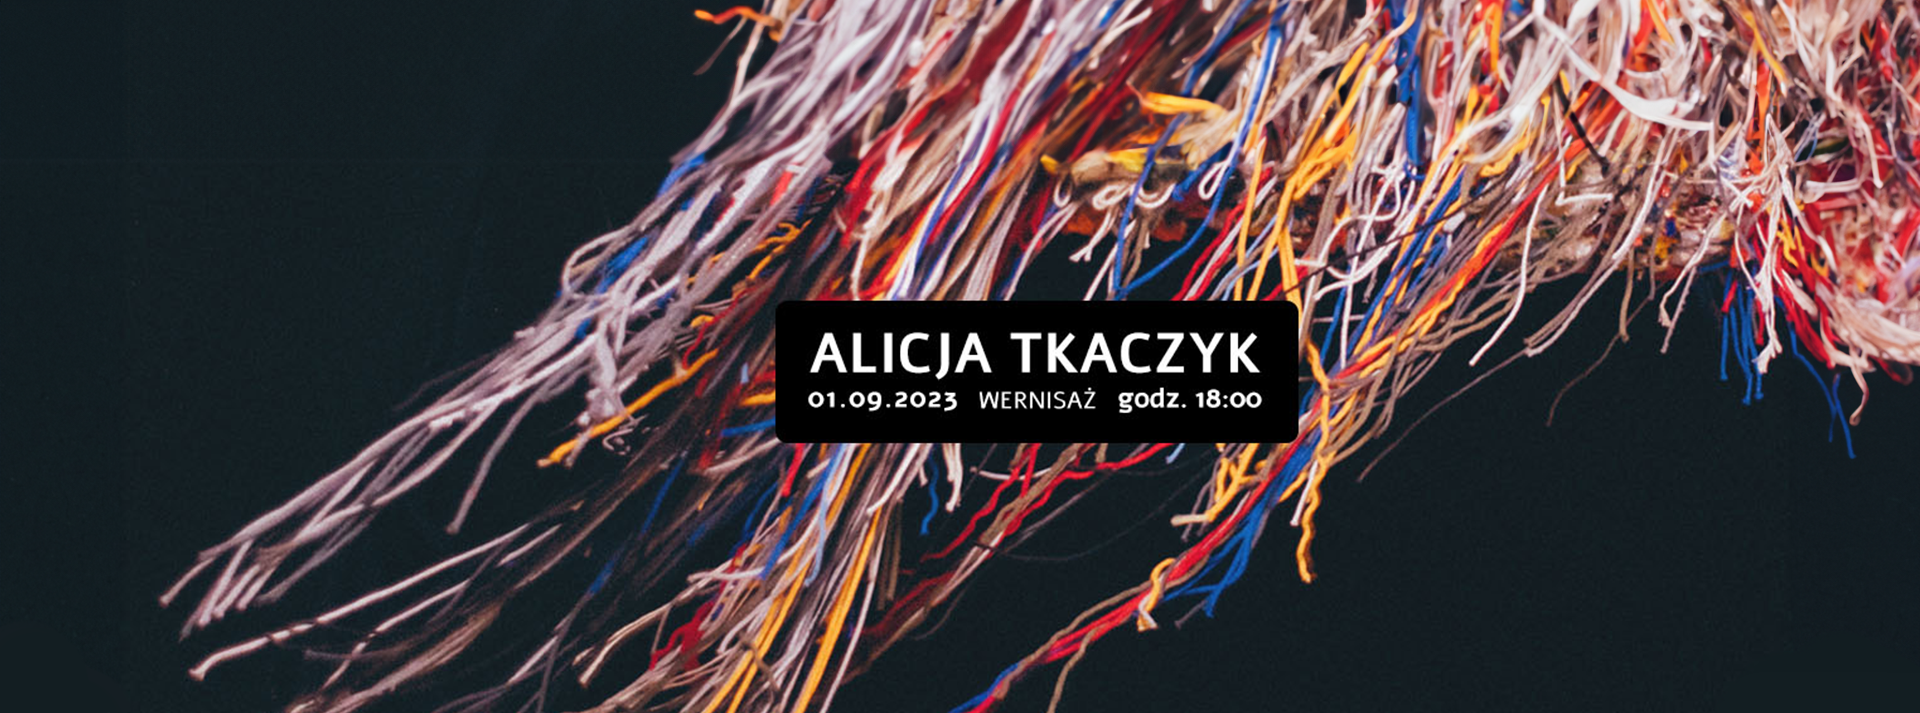 baner wystawy Alicji Tkaczyk